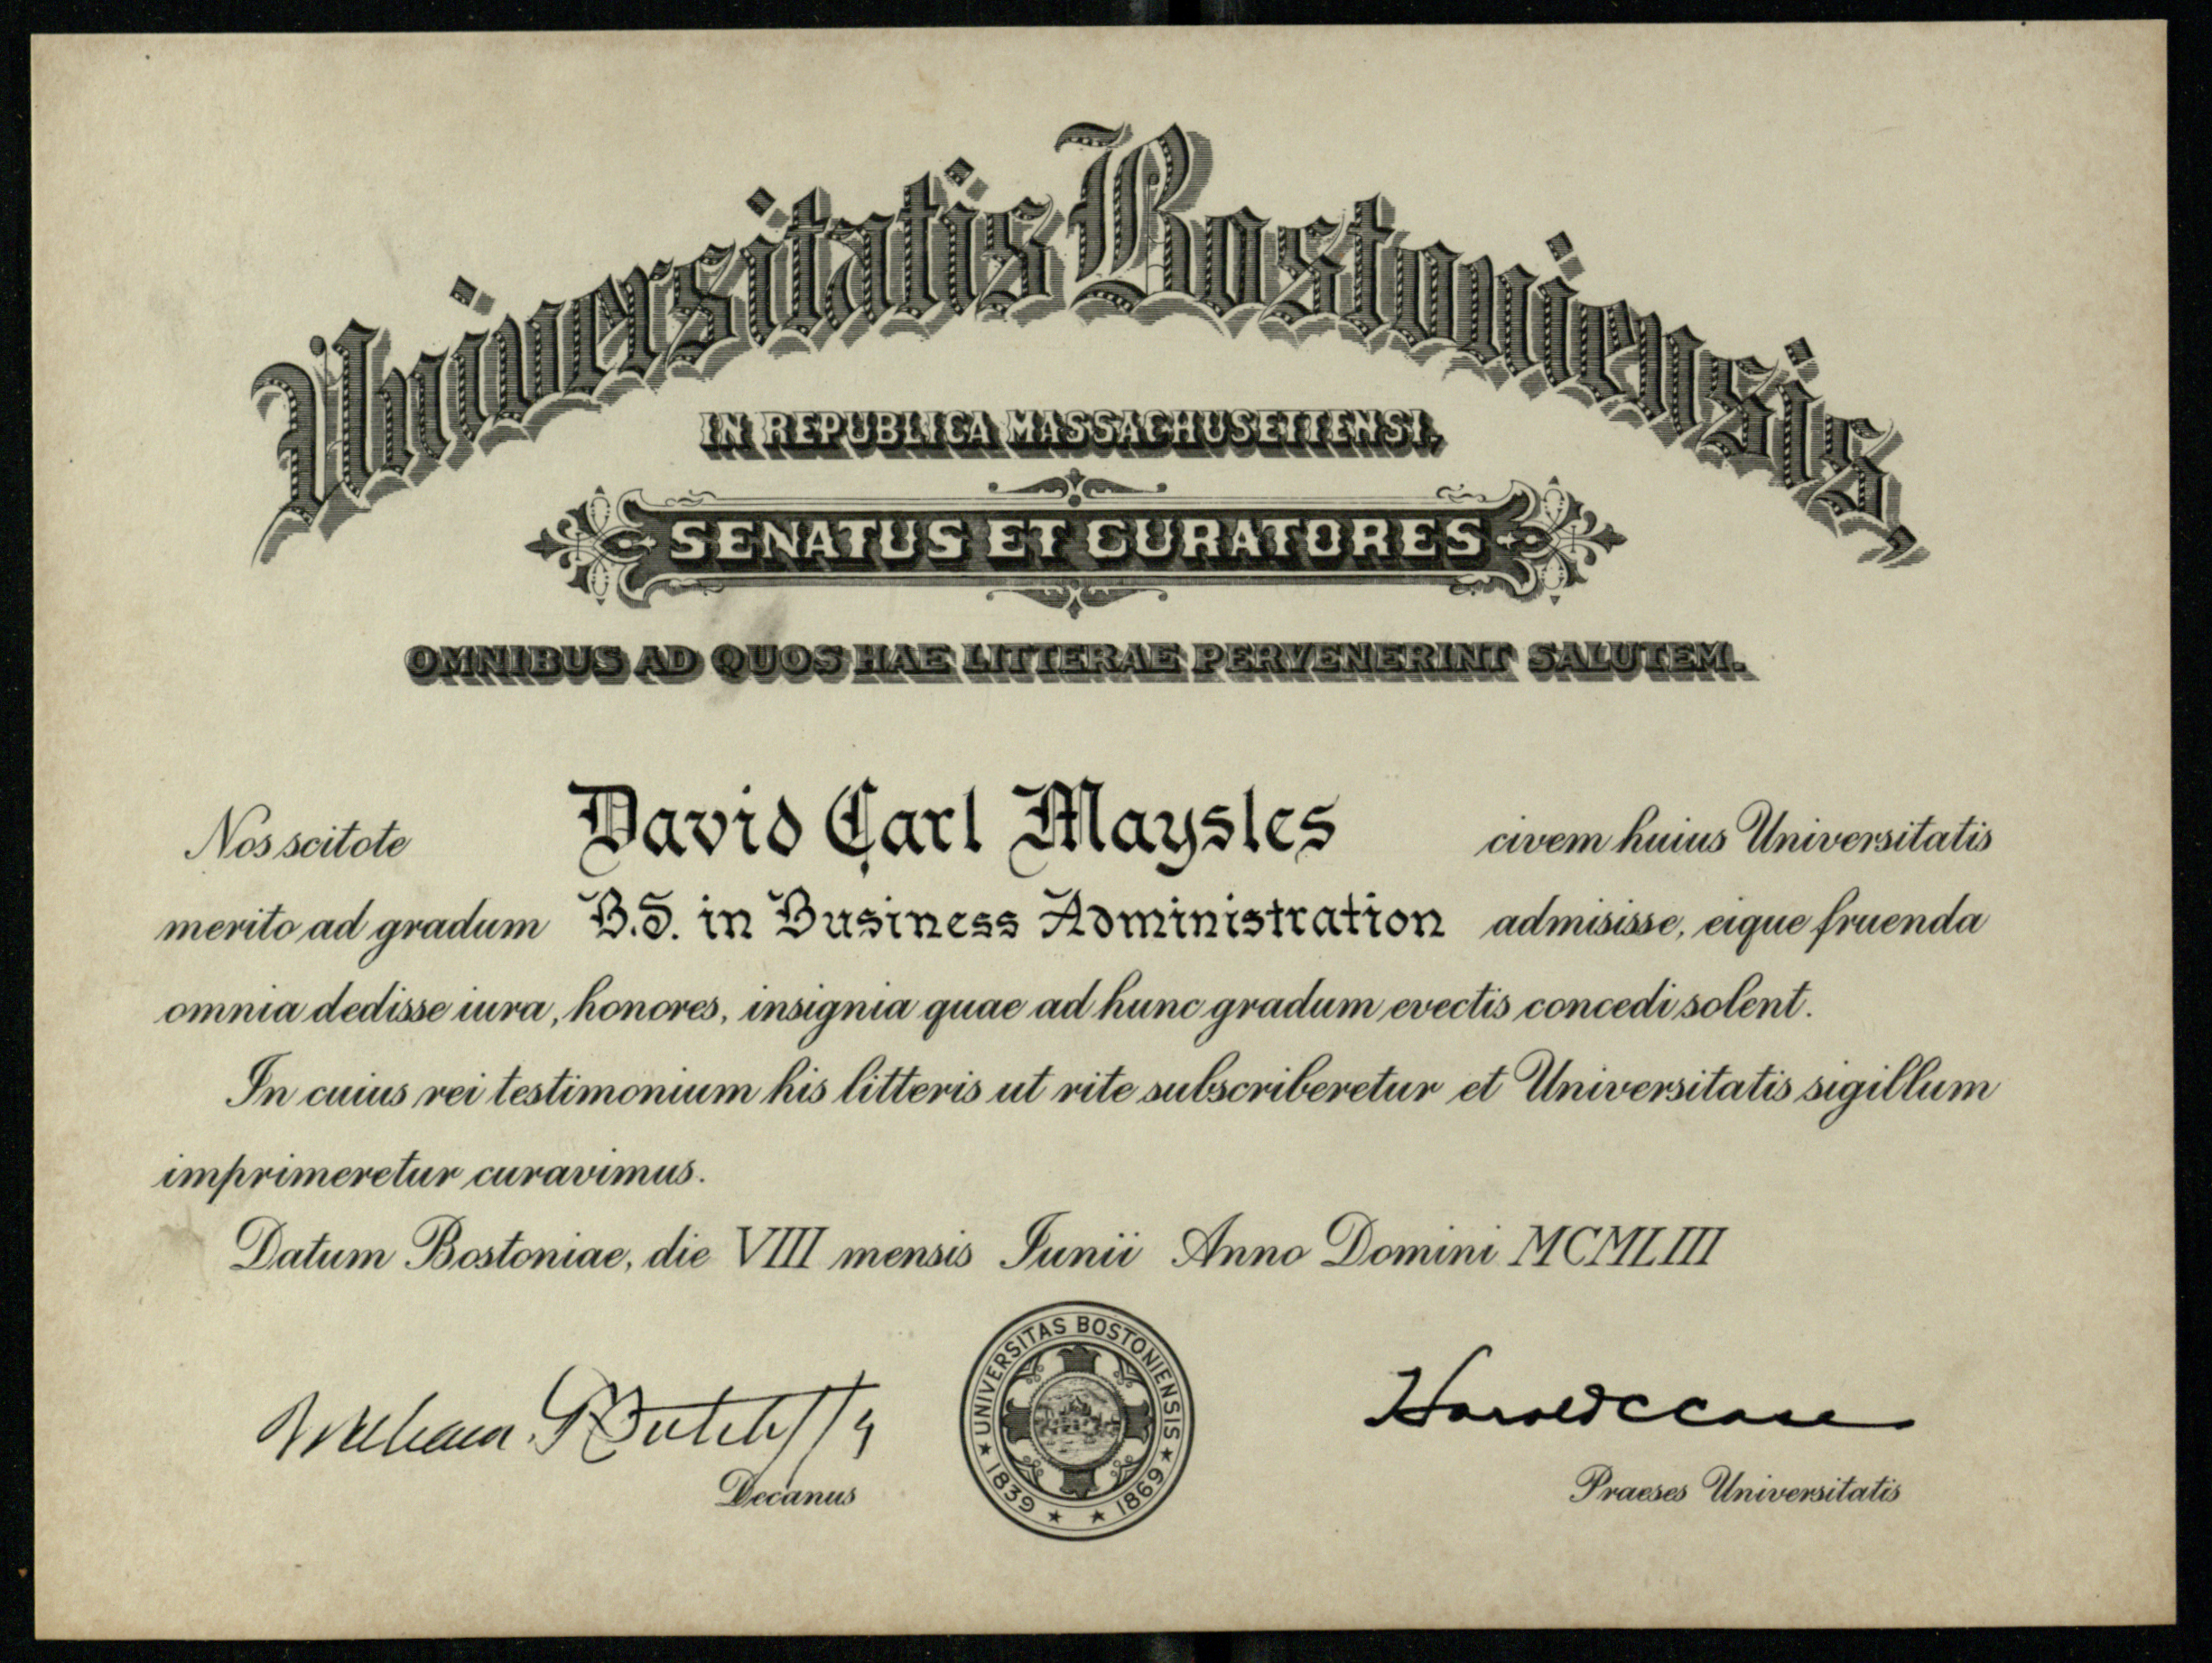 David Maysles BU diploma | Confluence